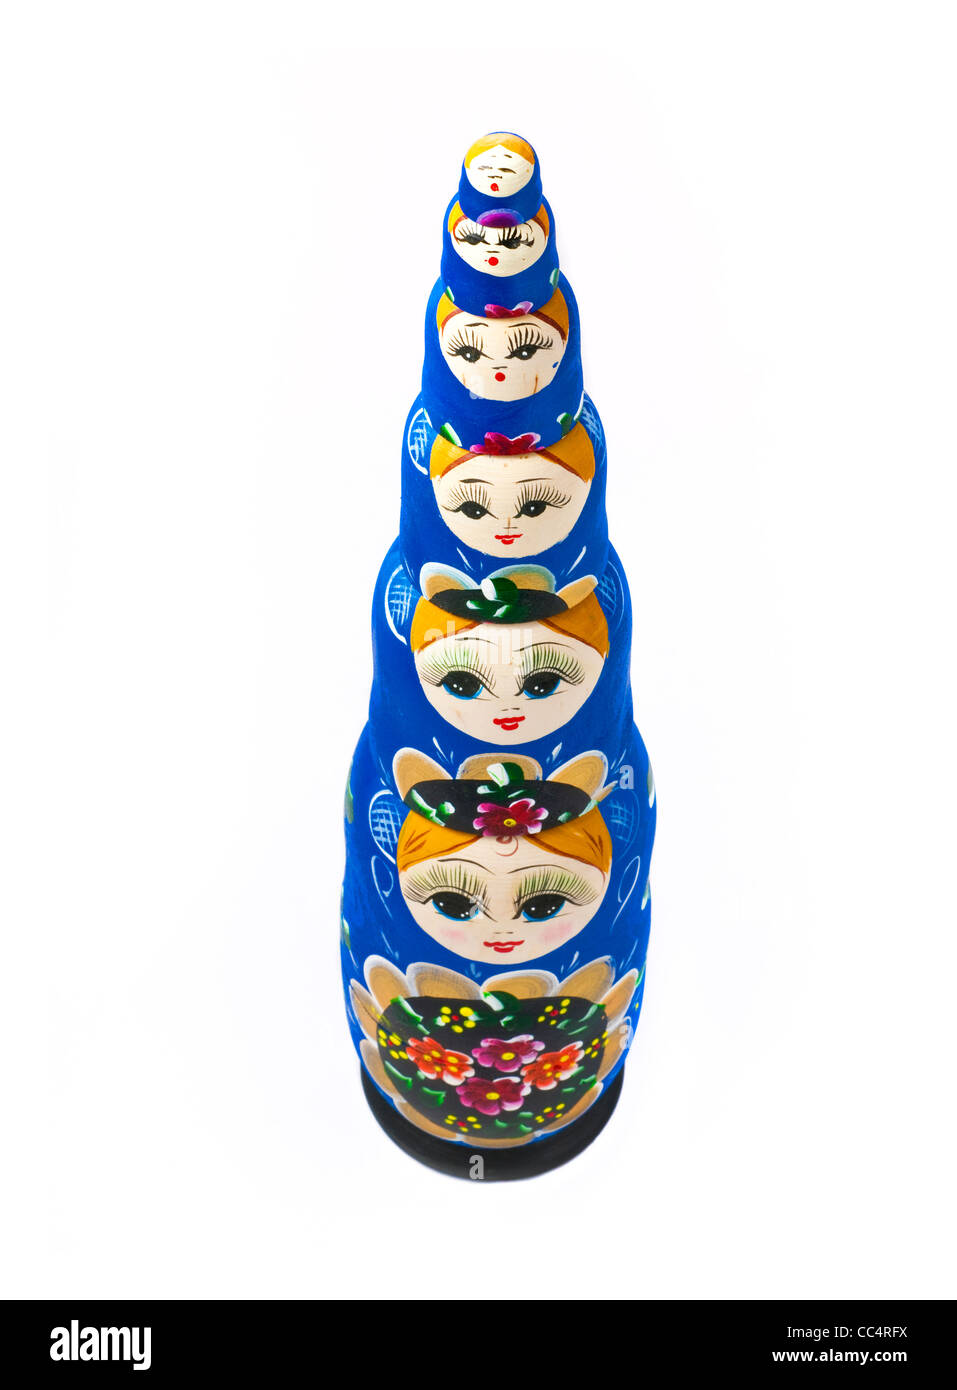 Diese beliebte russische Puppen sind übereinander gestapelt. Stockfoto